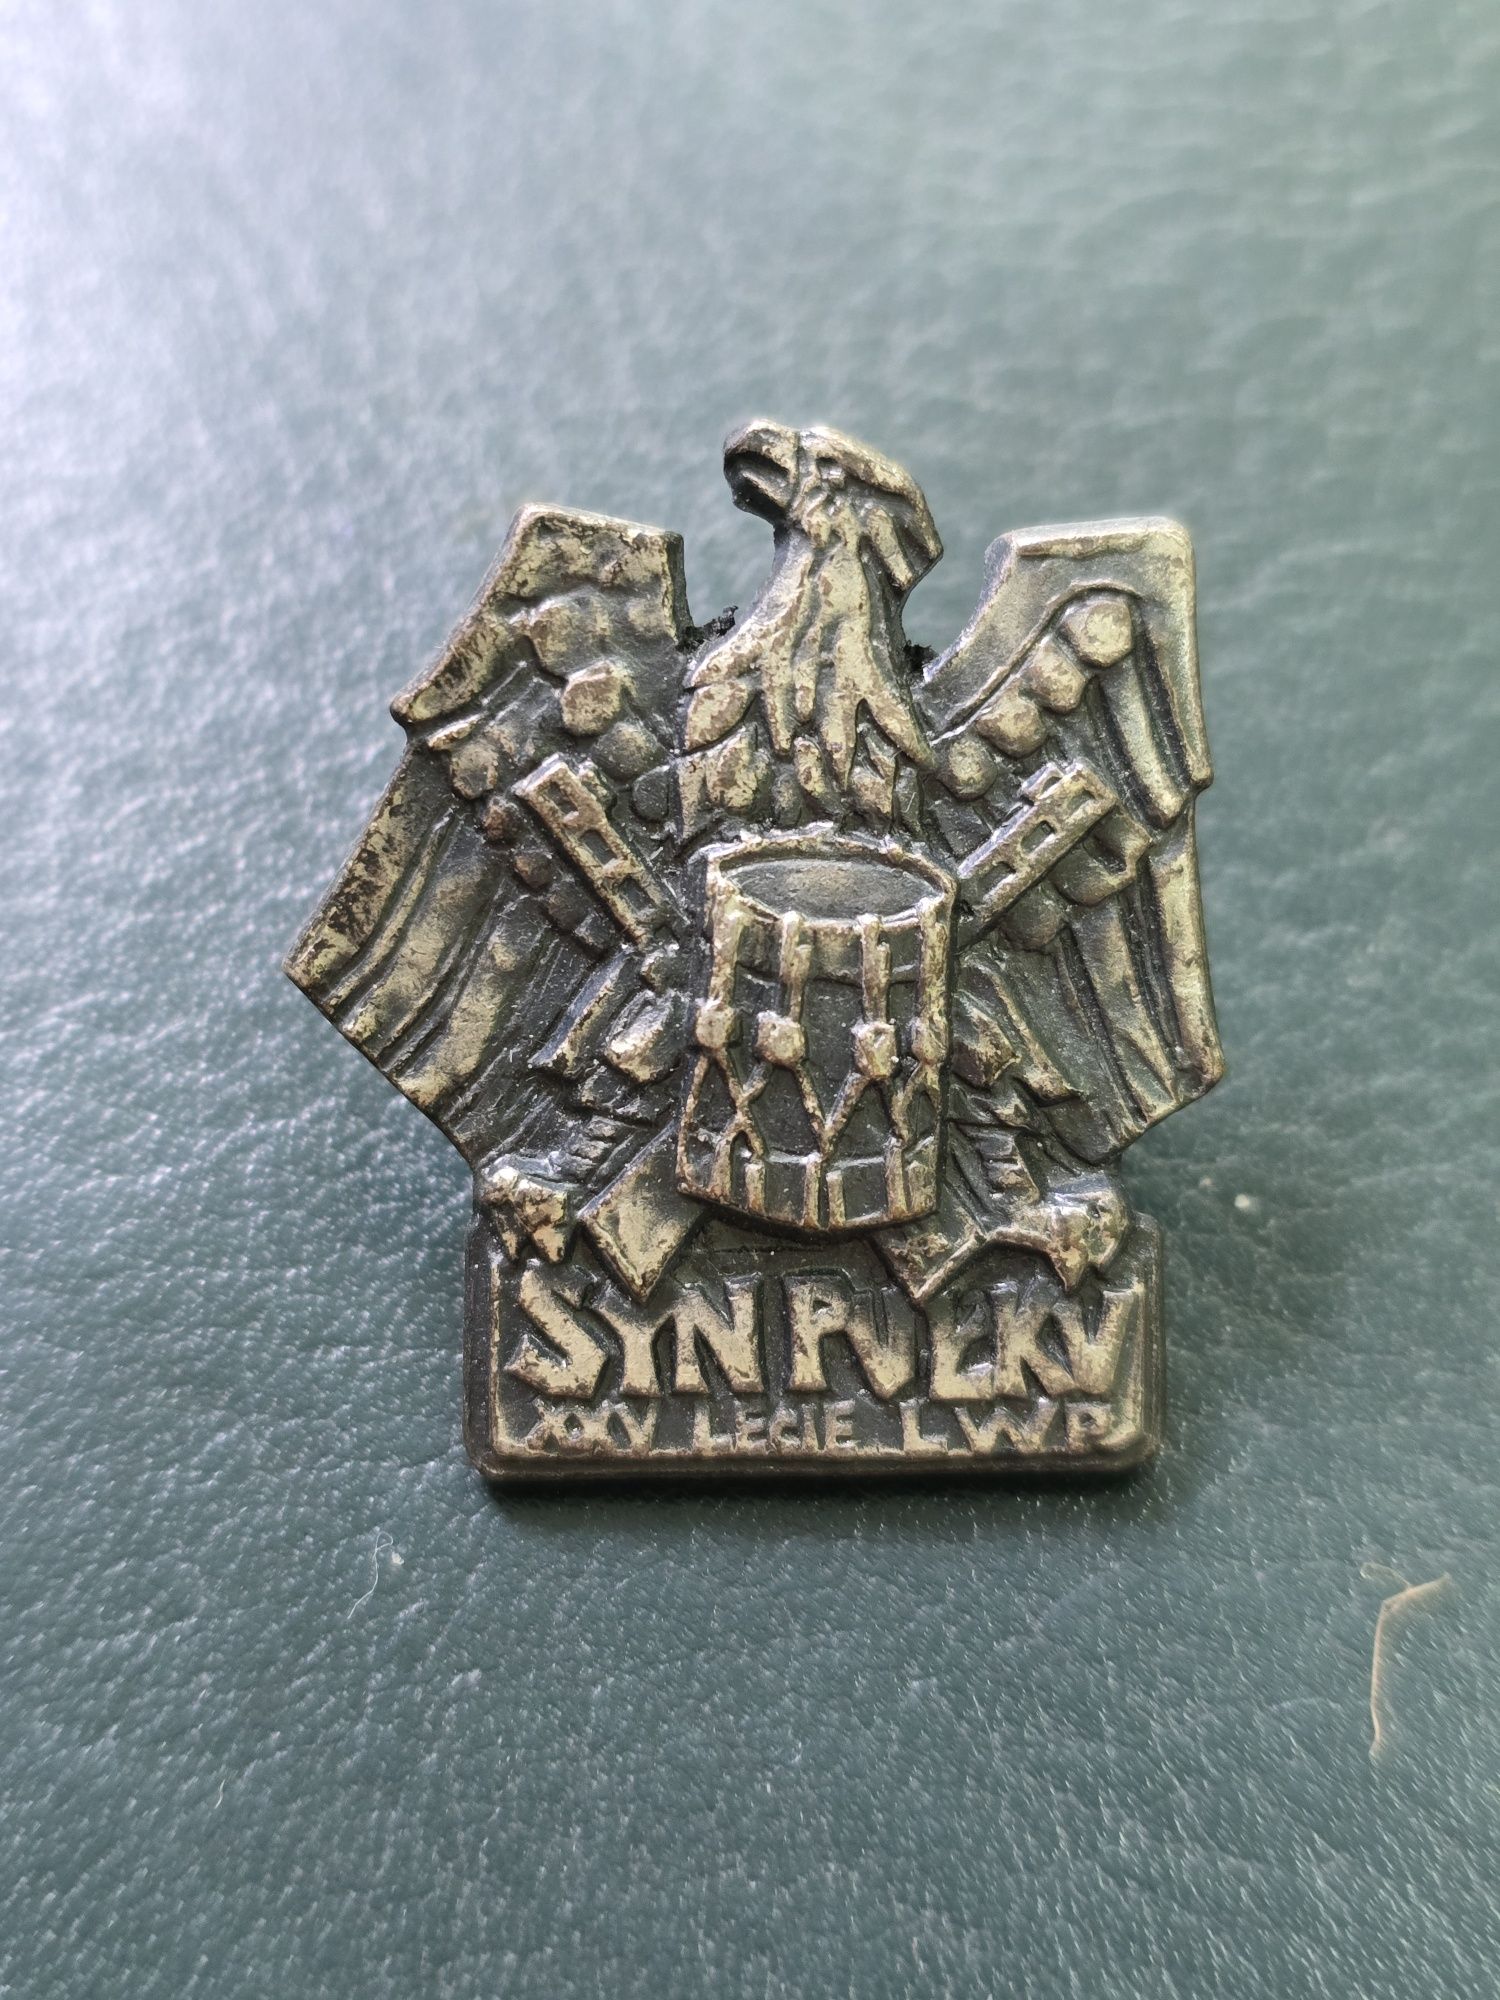 Odznaka Syn Pułku, XXV Lecie LWP